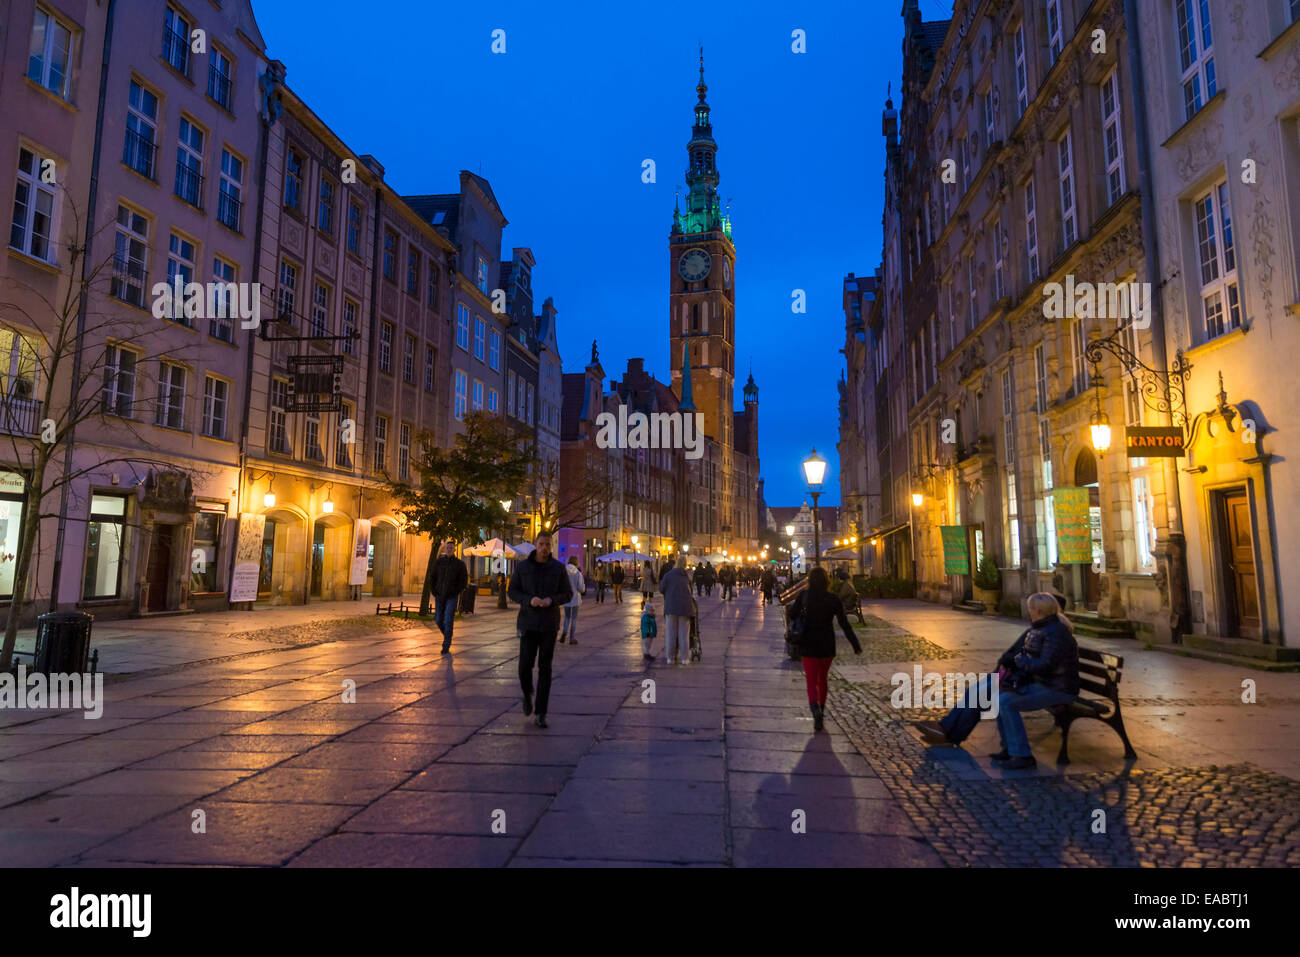 Altstadt von Danzig mit dem Rathaus in der Nacht, Polen Stockfoto